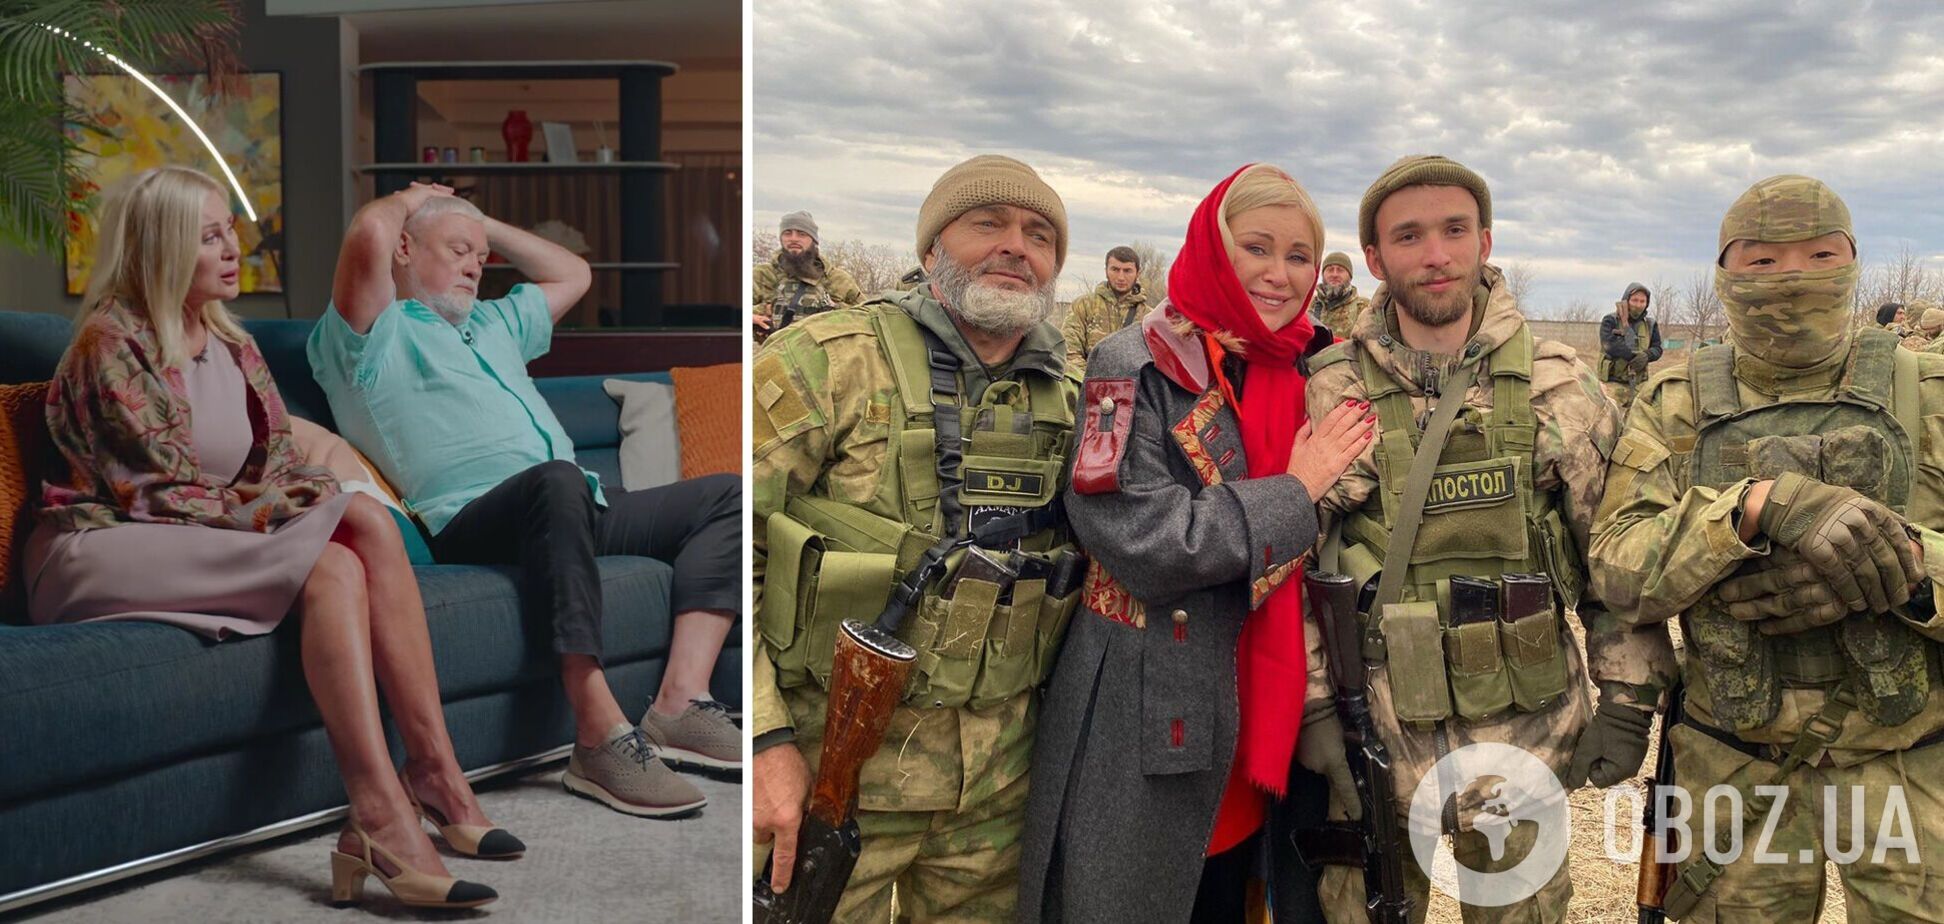 'Вот те крест!' Вика и Вадим Цыгановы, ставшие посмешищем у Дудя, съездили на Донбасс к оккупантам